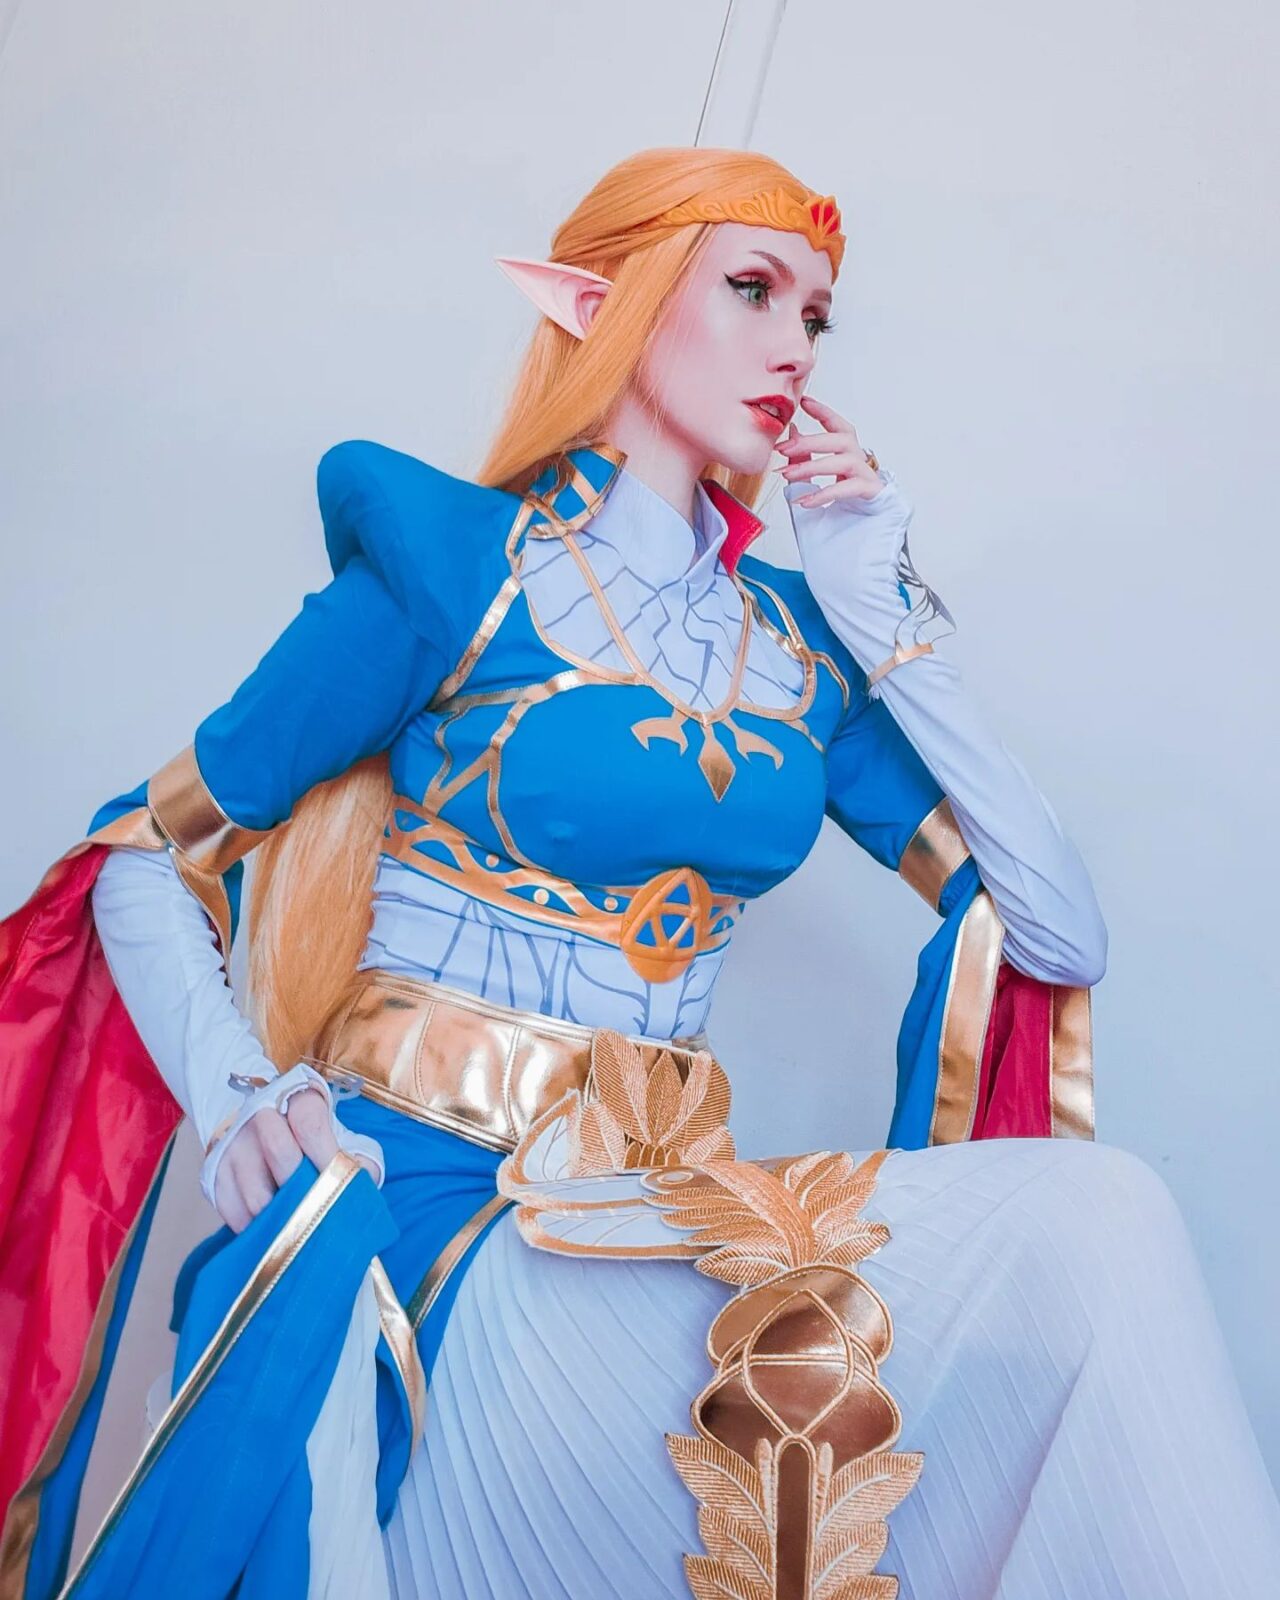 Brasileira mahoualien surpreende os fãs com lindo cosplay da princesa Zelda